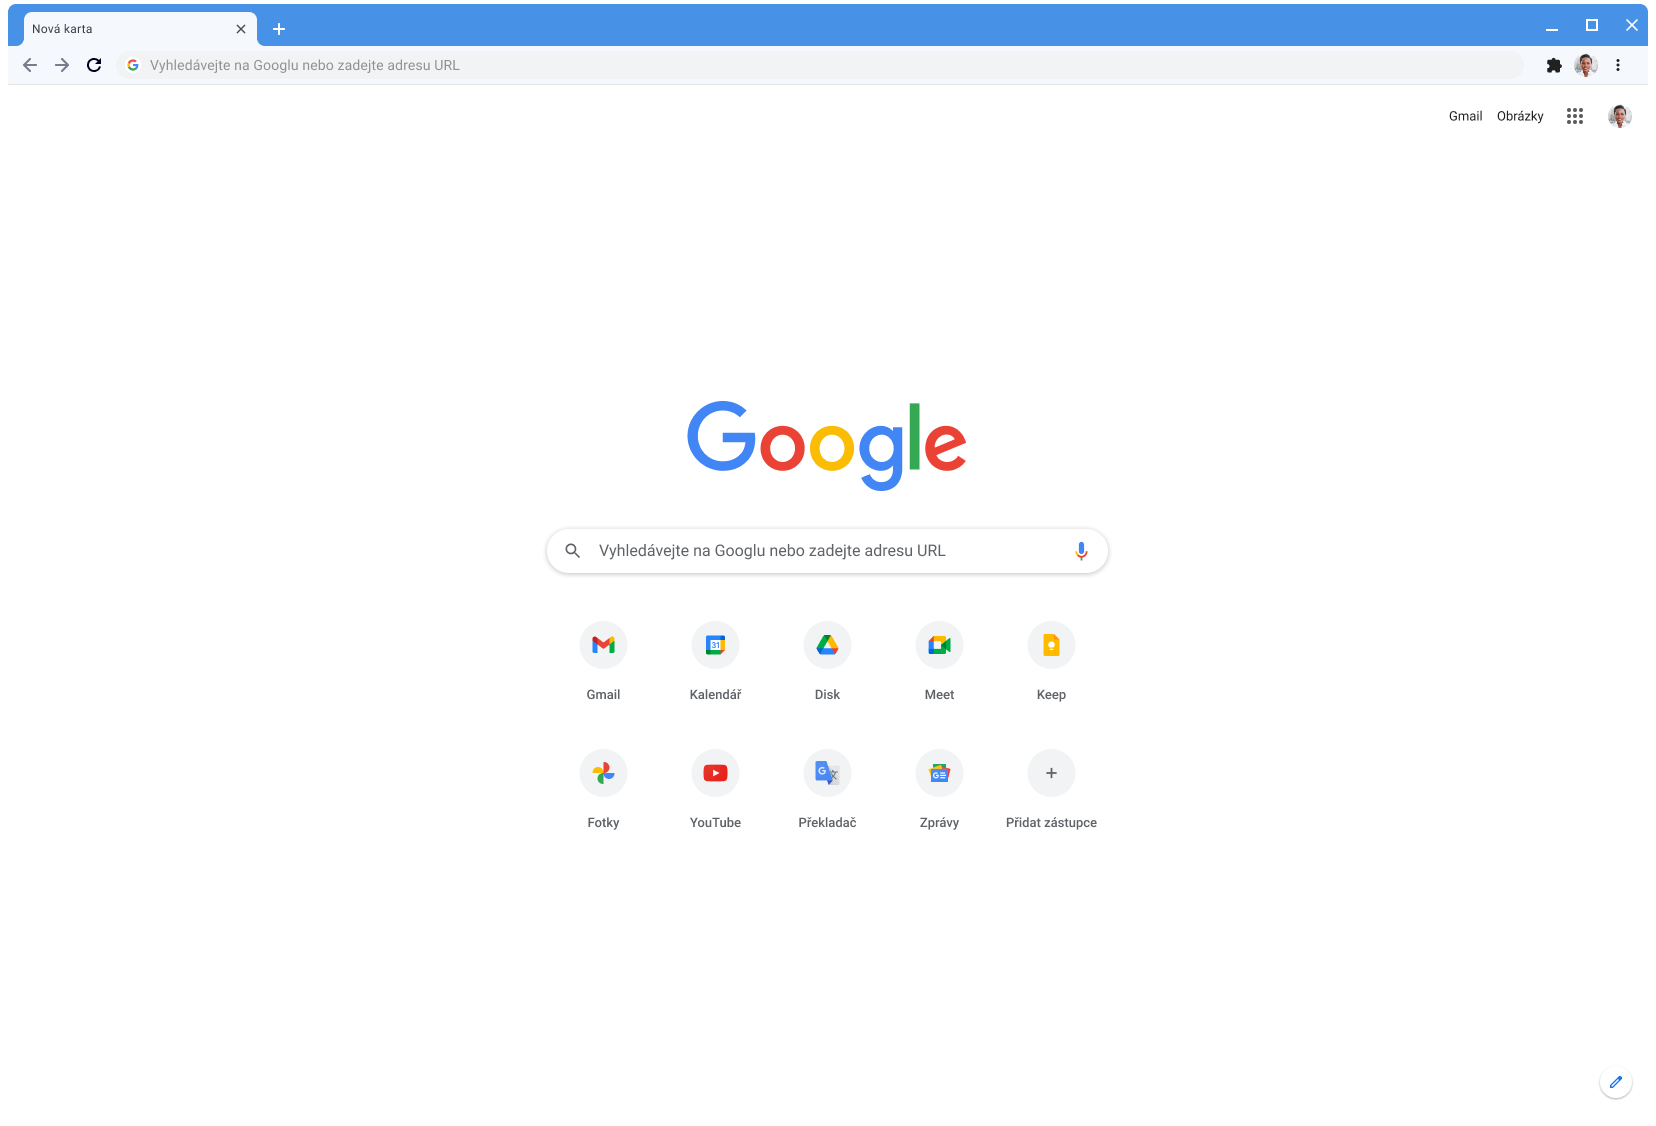 Okno prohlížeče Chrome s webem Google.com v klasickém motivu.